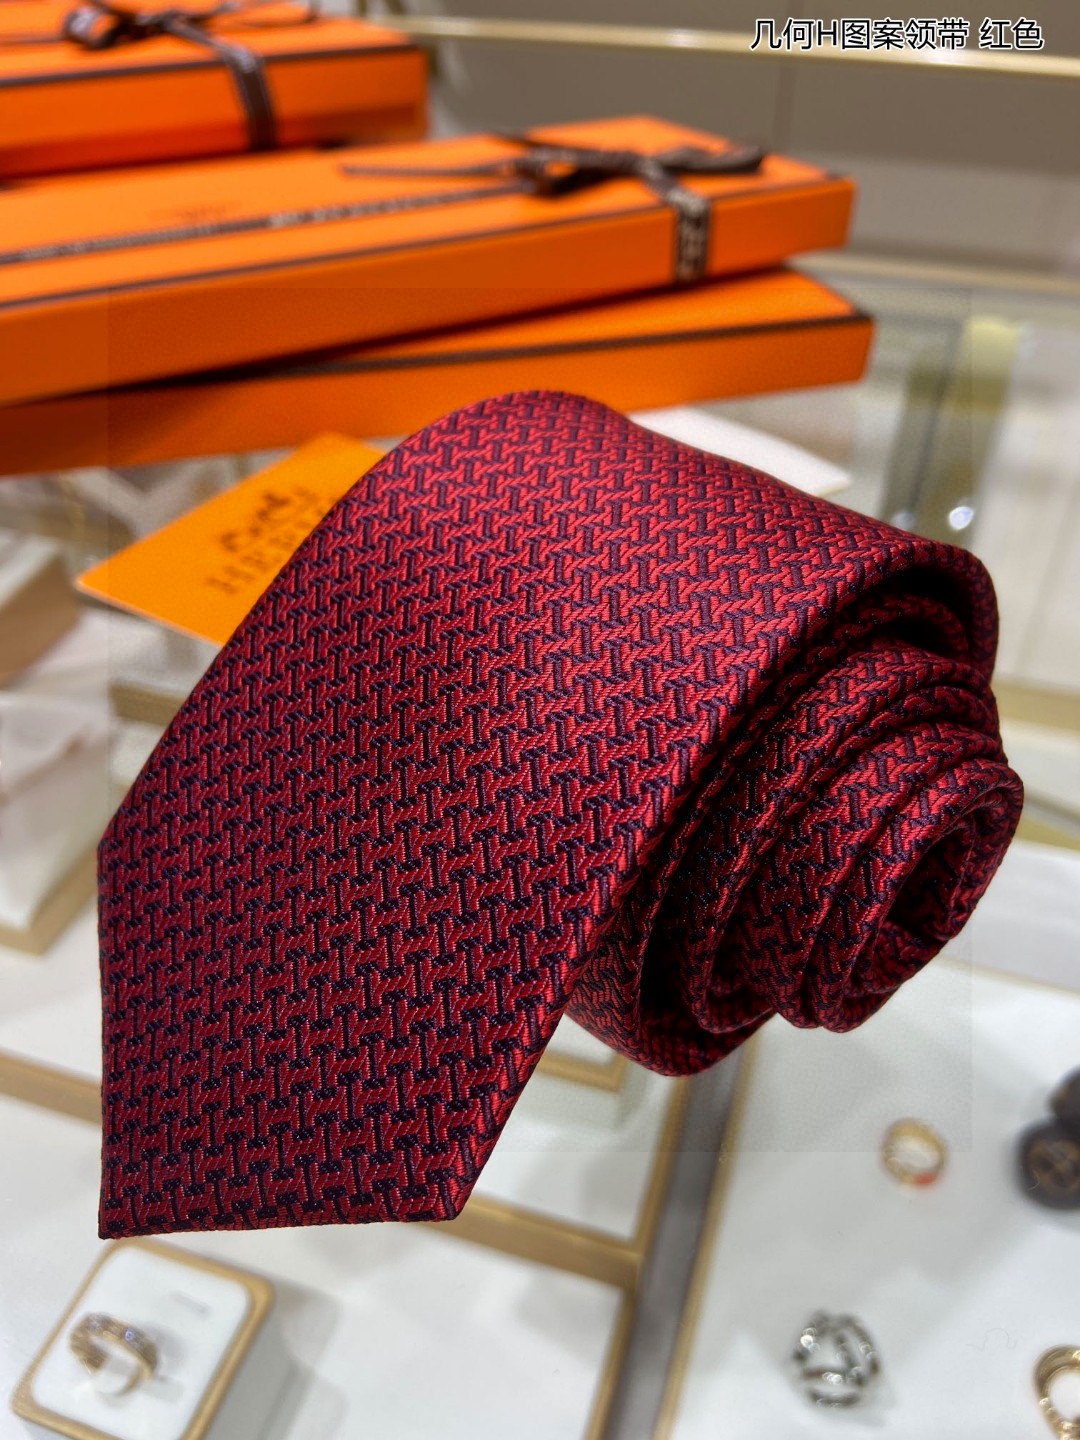 男士新款领带系列几何H图案领带稀有H家每年都有一千条不同印花的领带面世从最初的多以几何图案表现骑术活动为